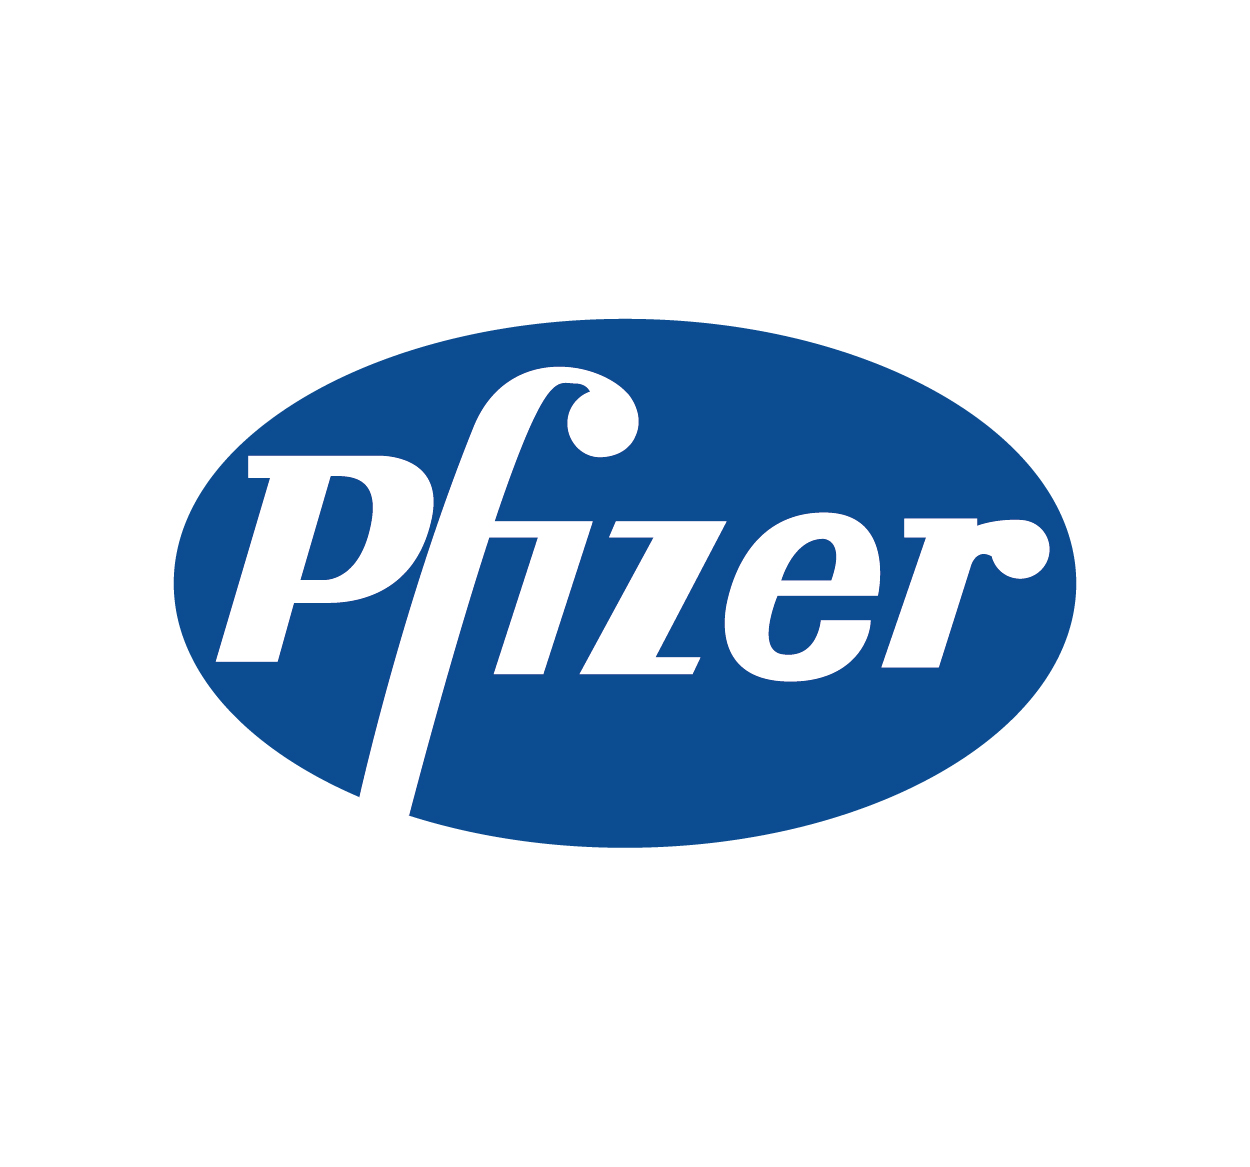 pfizer logos